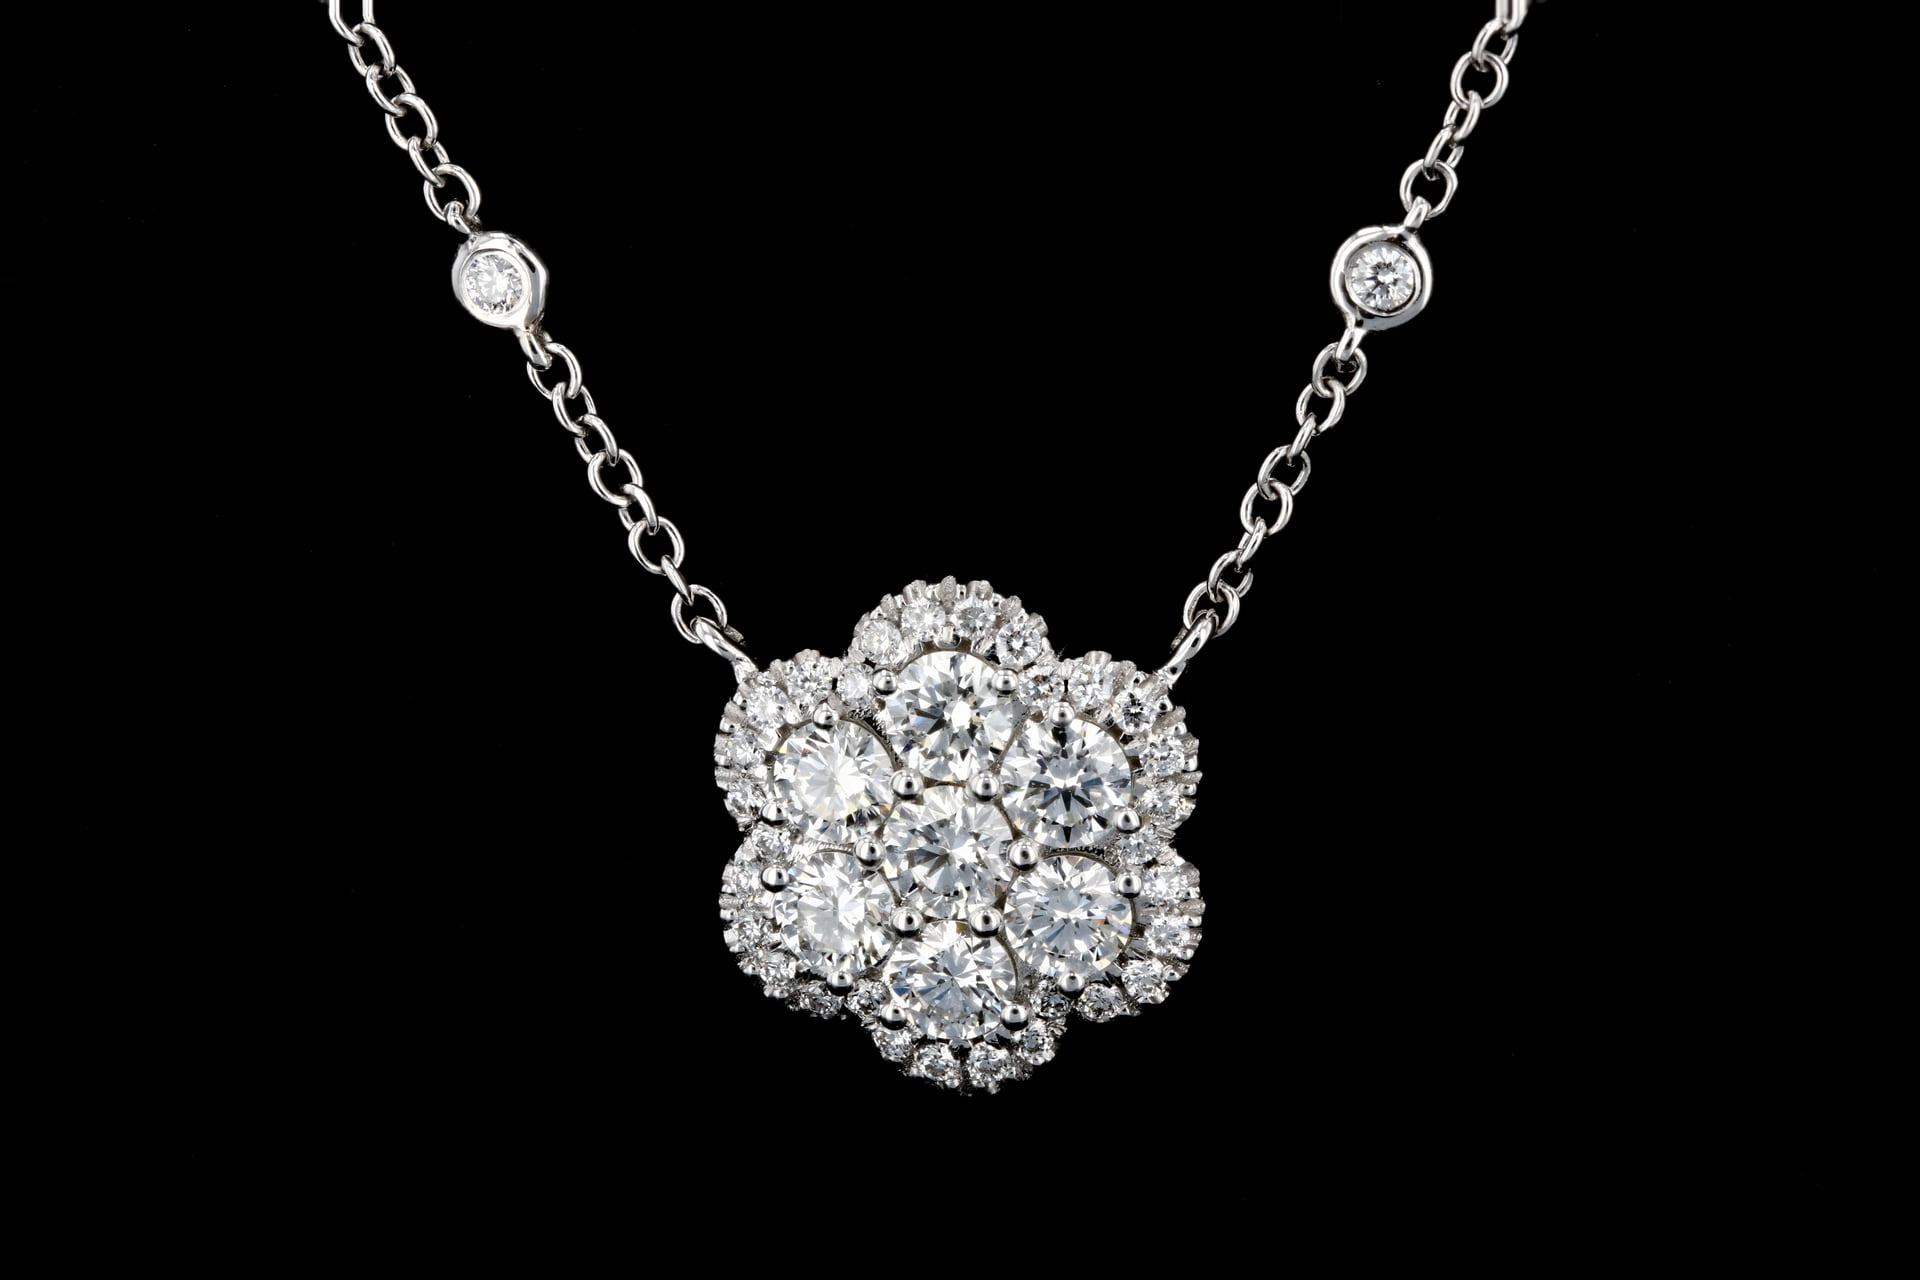 Diamond by the Yard Necklace - Zoe Lev Jewelry